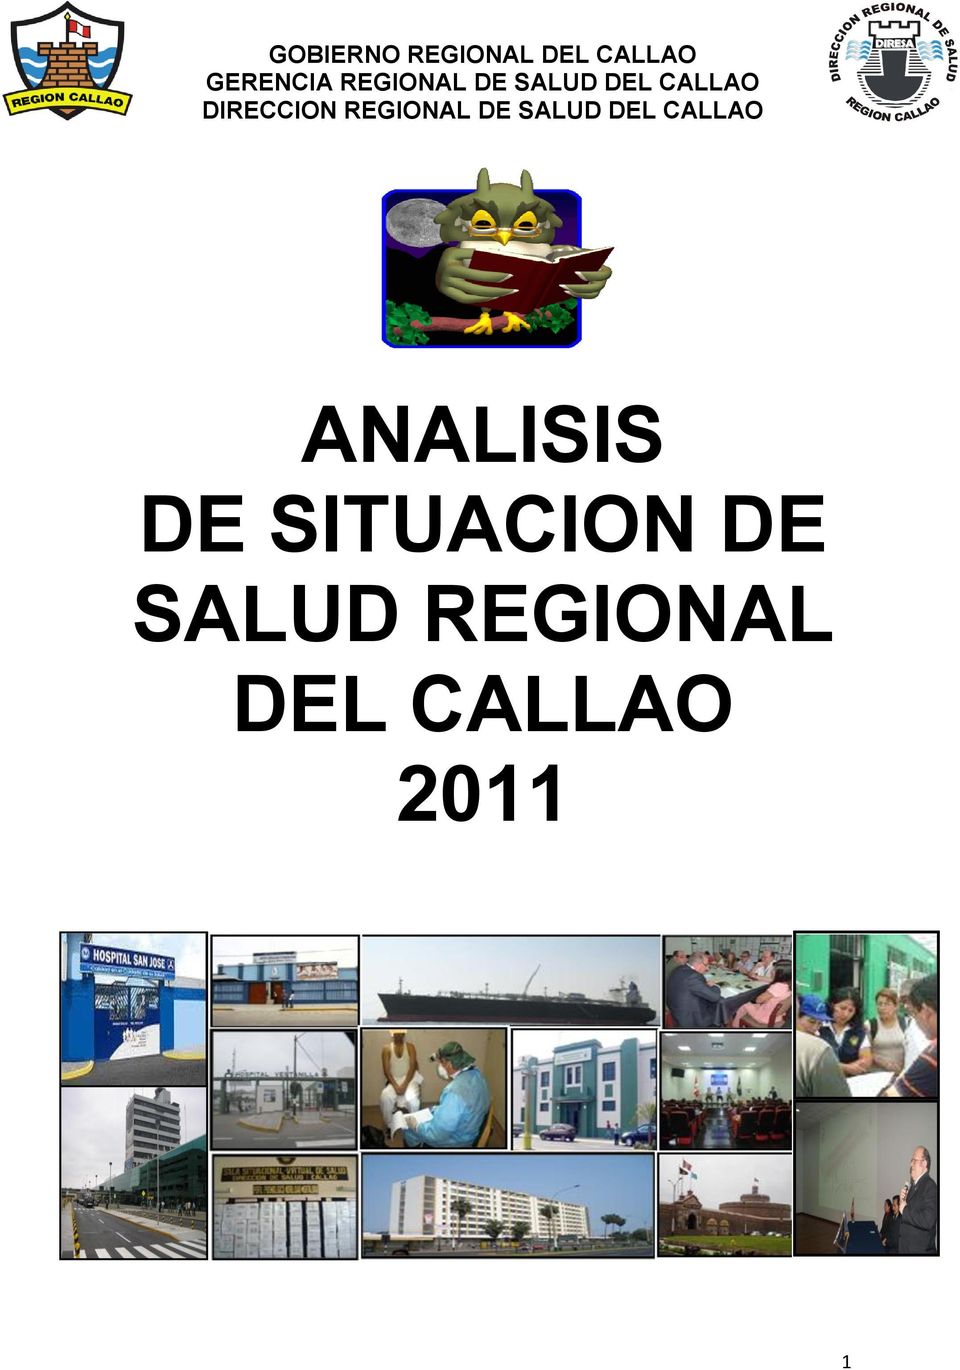 REGIONAL DE SALUD DEL CALLAO ANALISIS DE